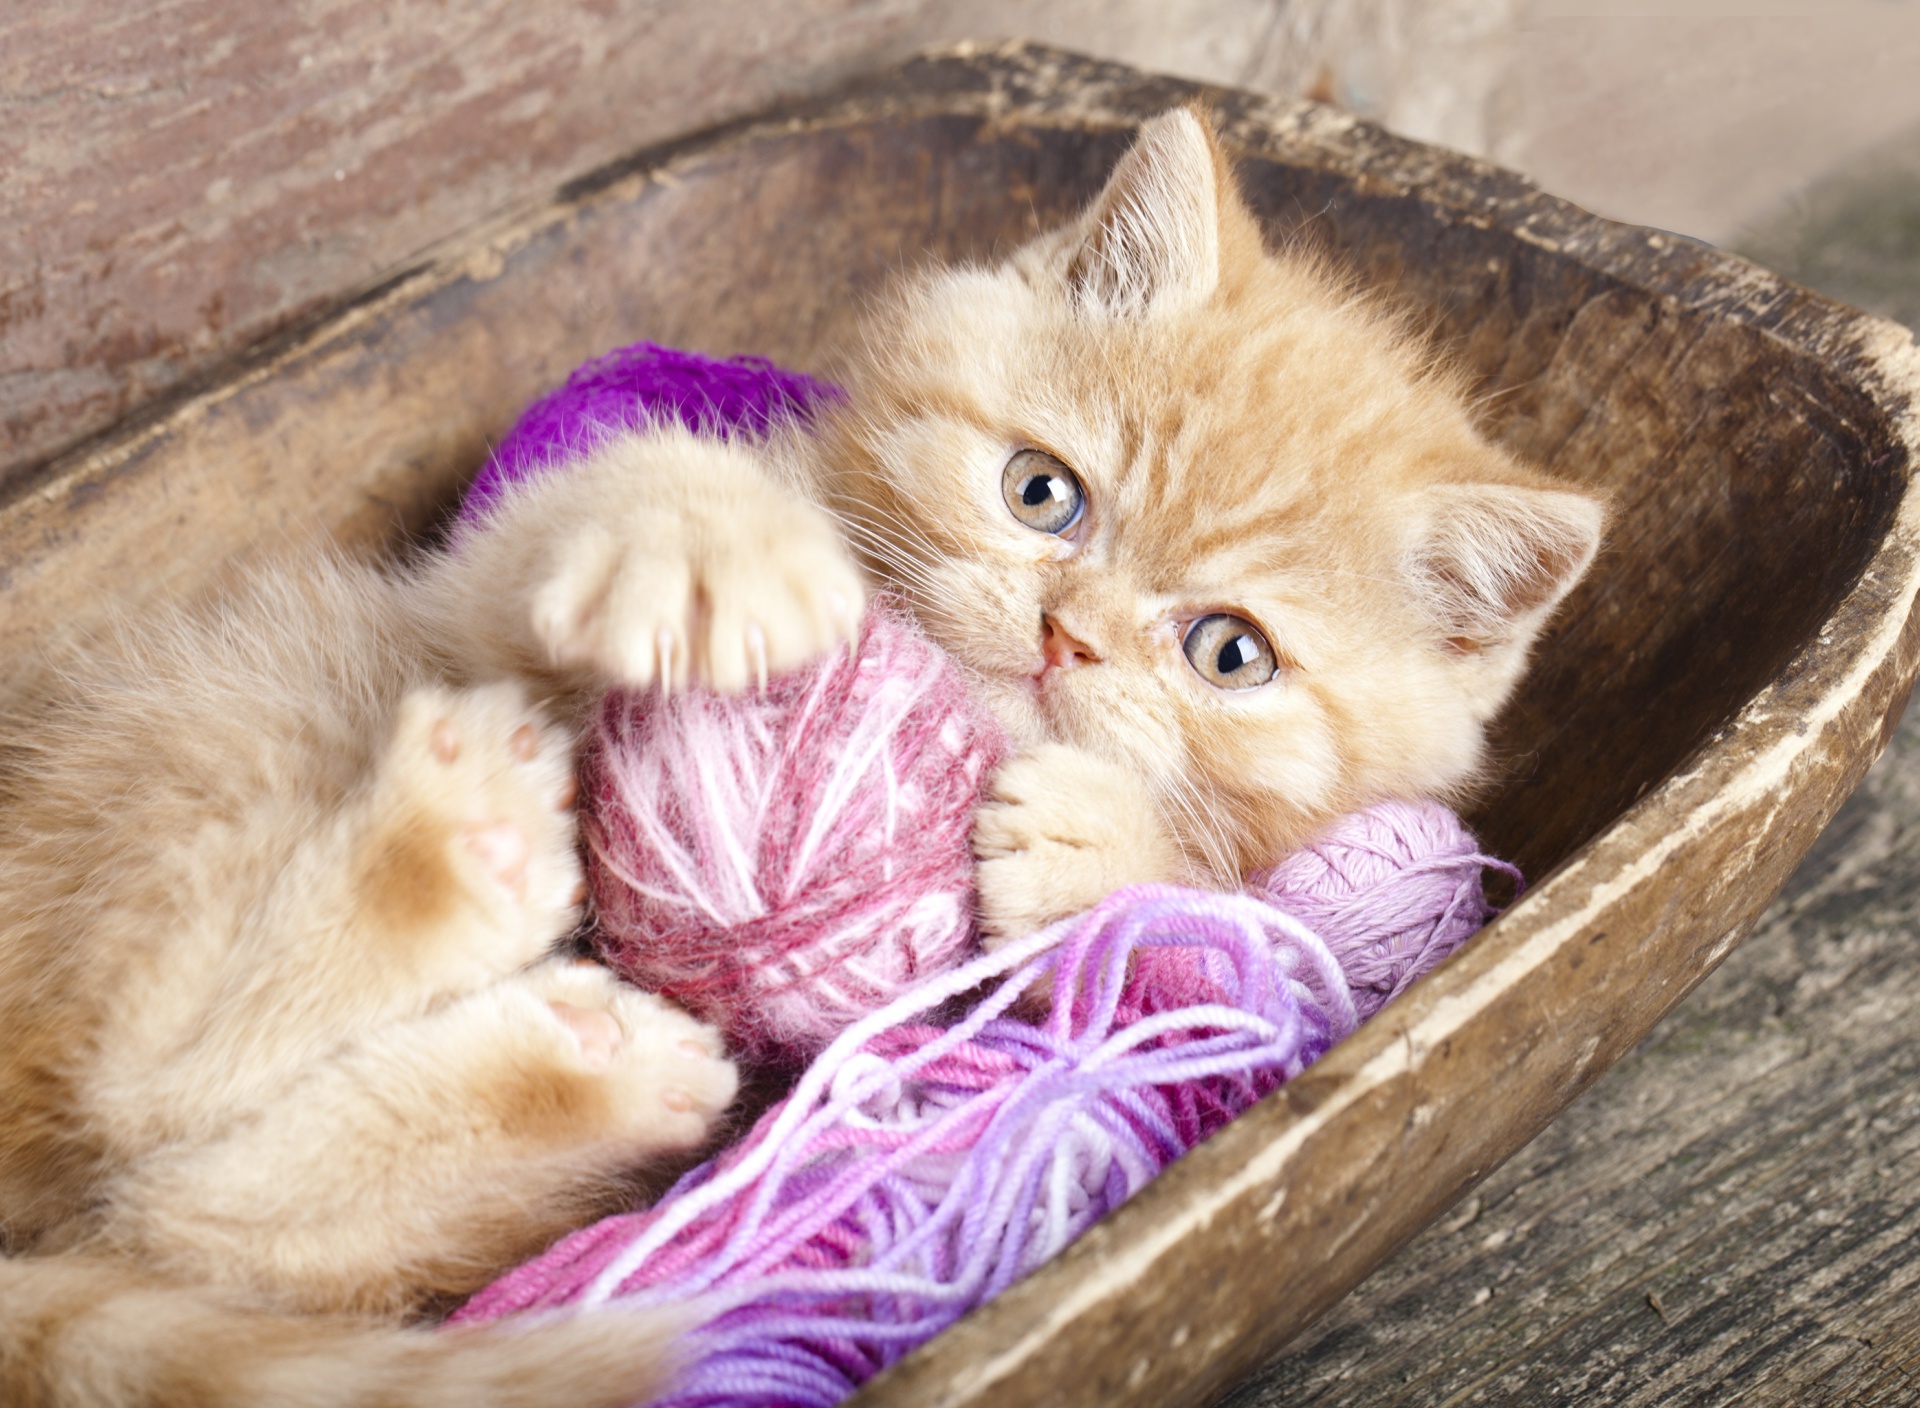 Обои Cute Kitten Playing With A Ball Of Yarn 1920x1408